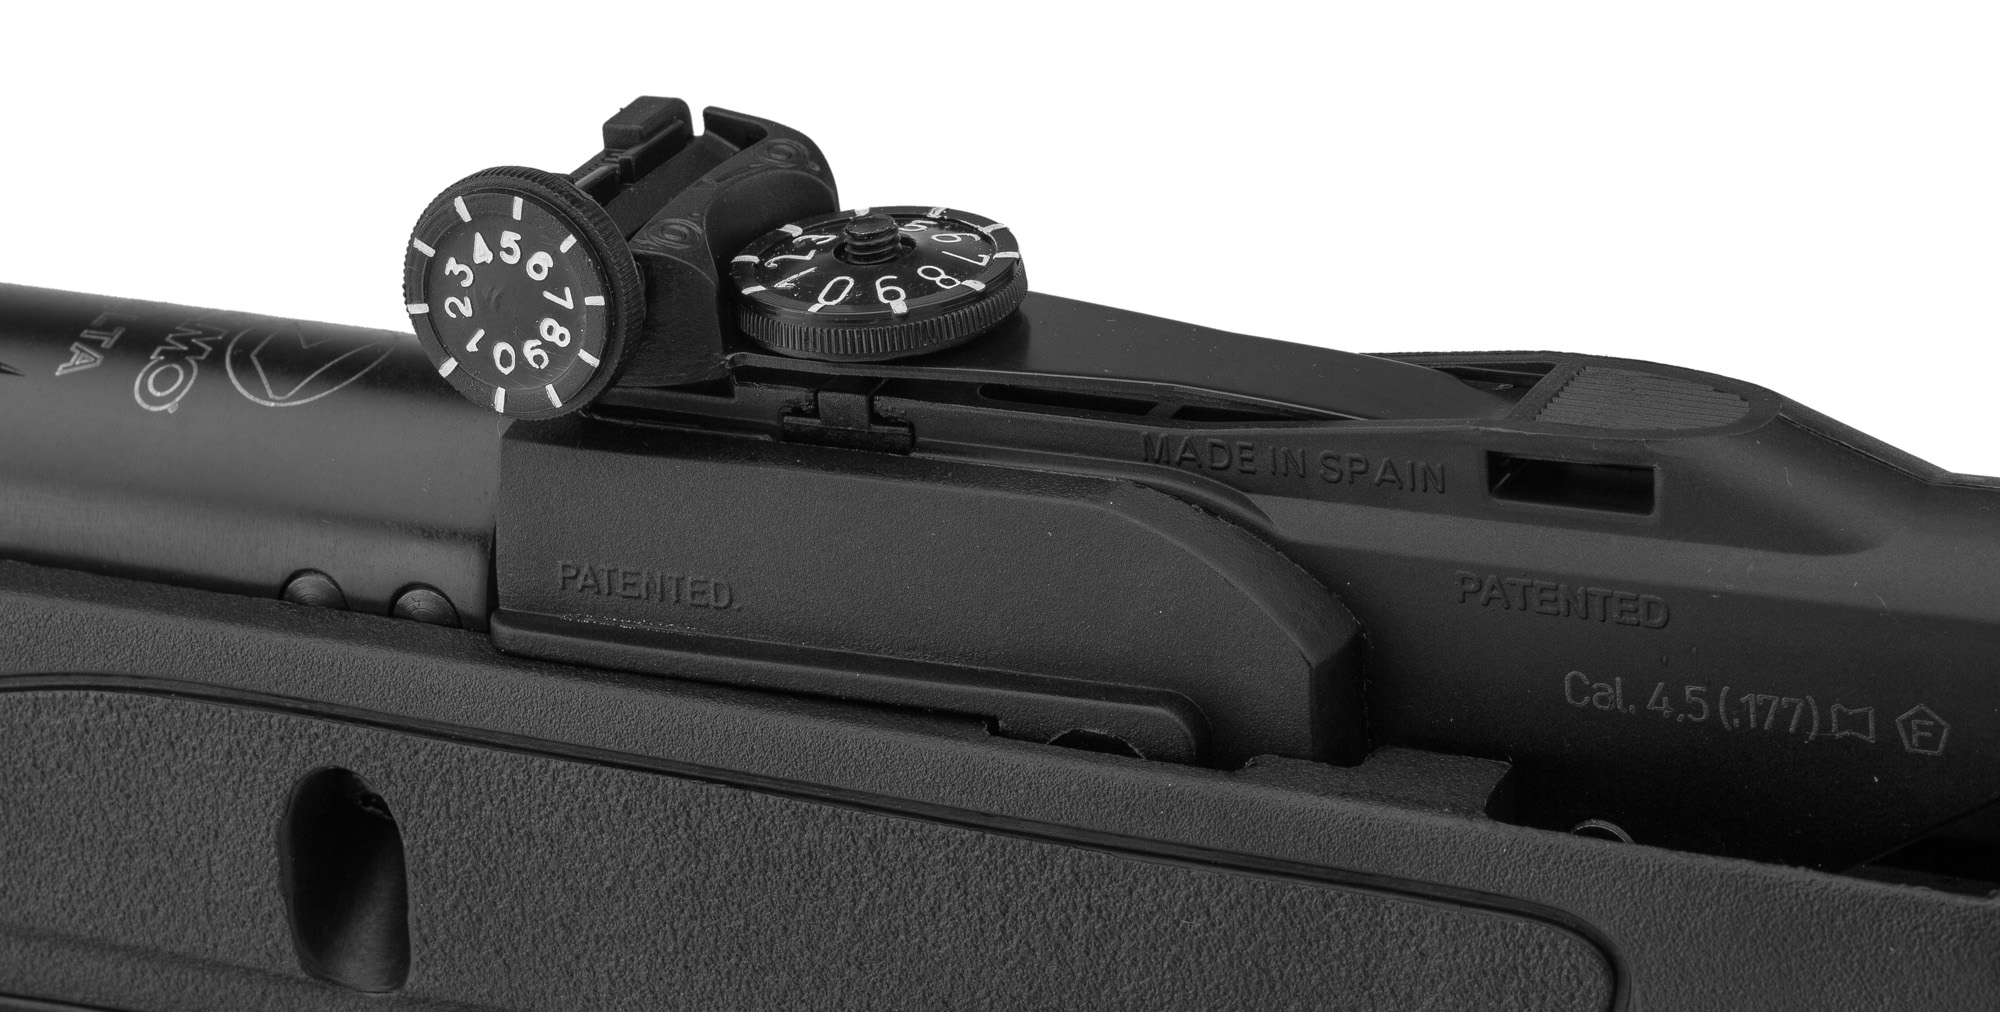 Gamo Delta - Carabine à plombs 4,5 mm à air comprimé - idéal pour